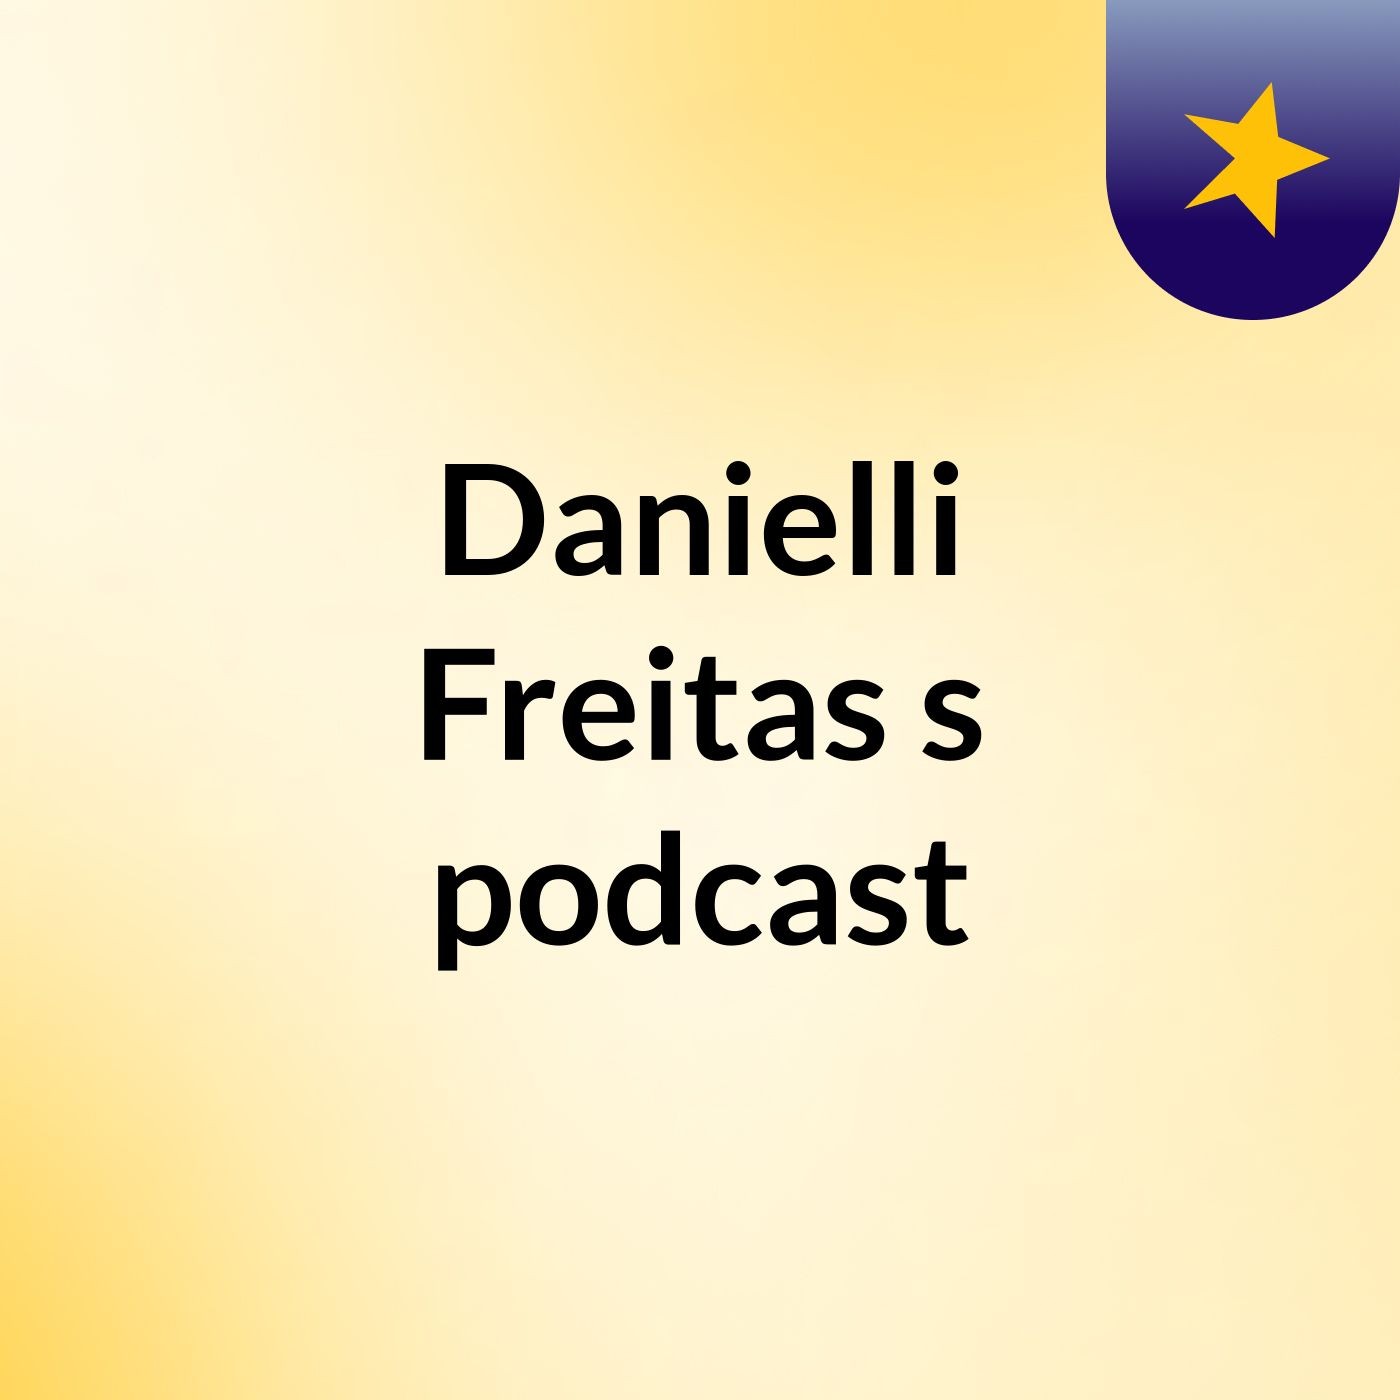 Danielli Freitas's podcast